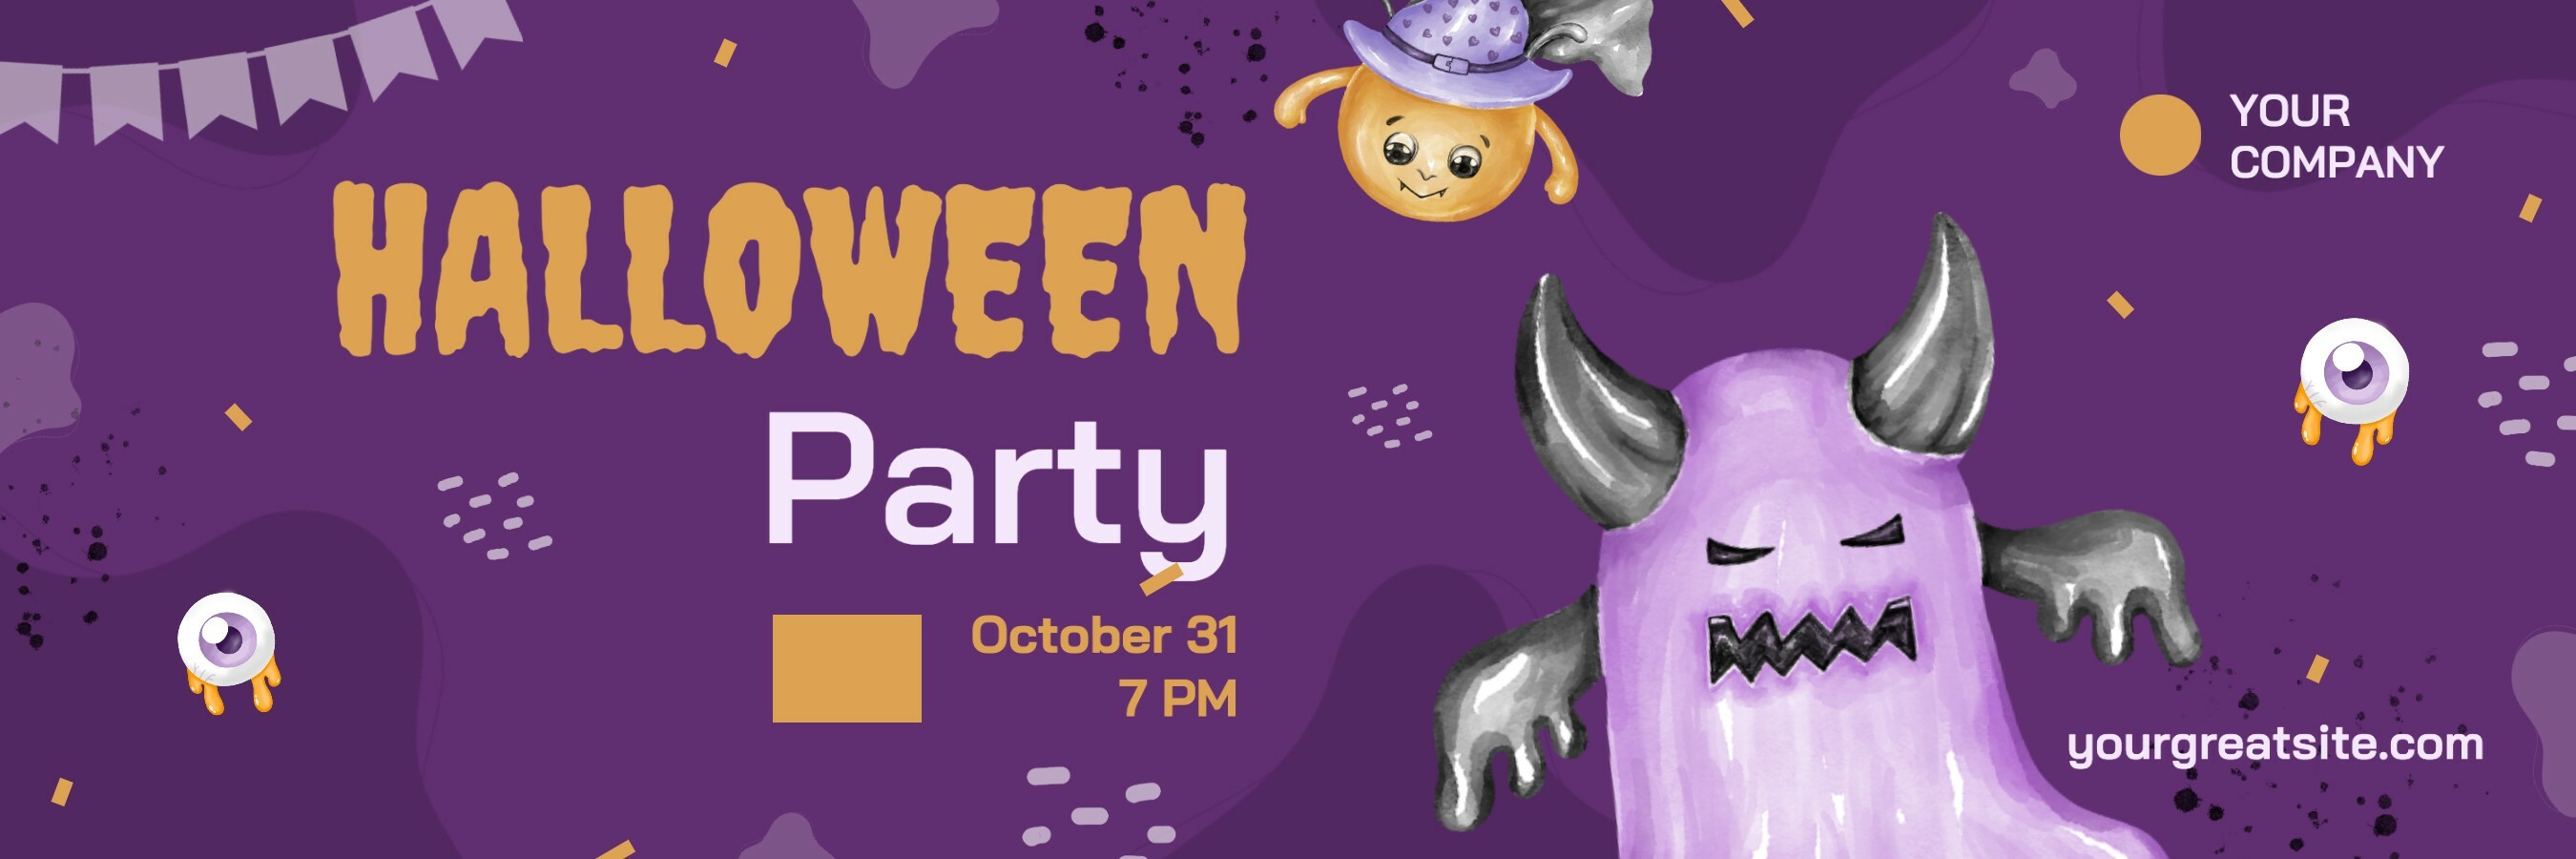 Seasonal Halloween Party Invitation Twitter Header